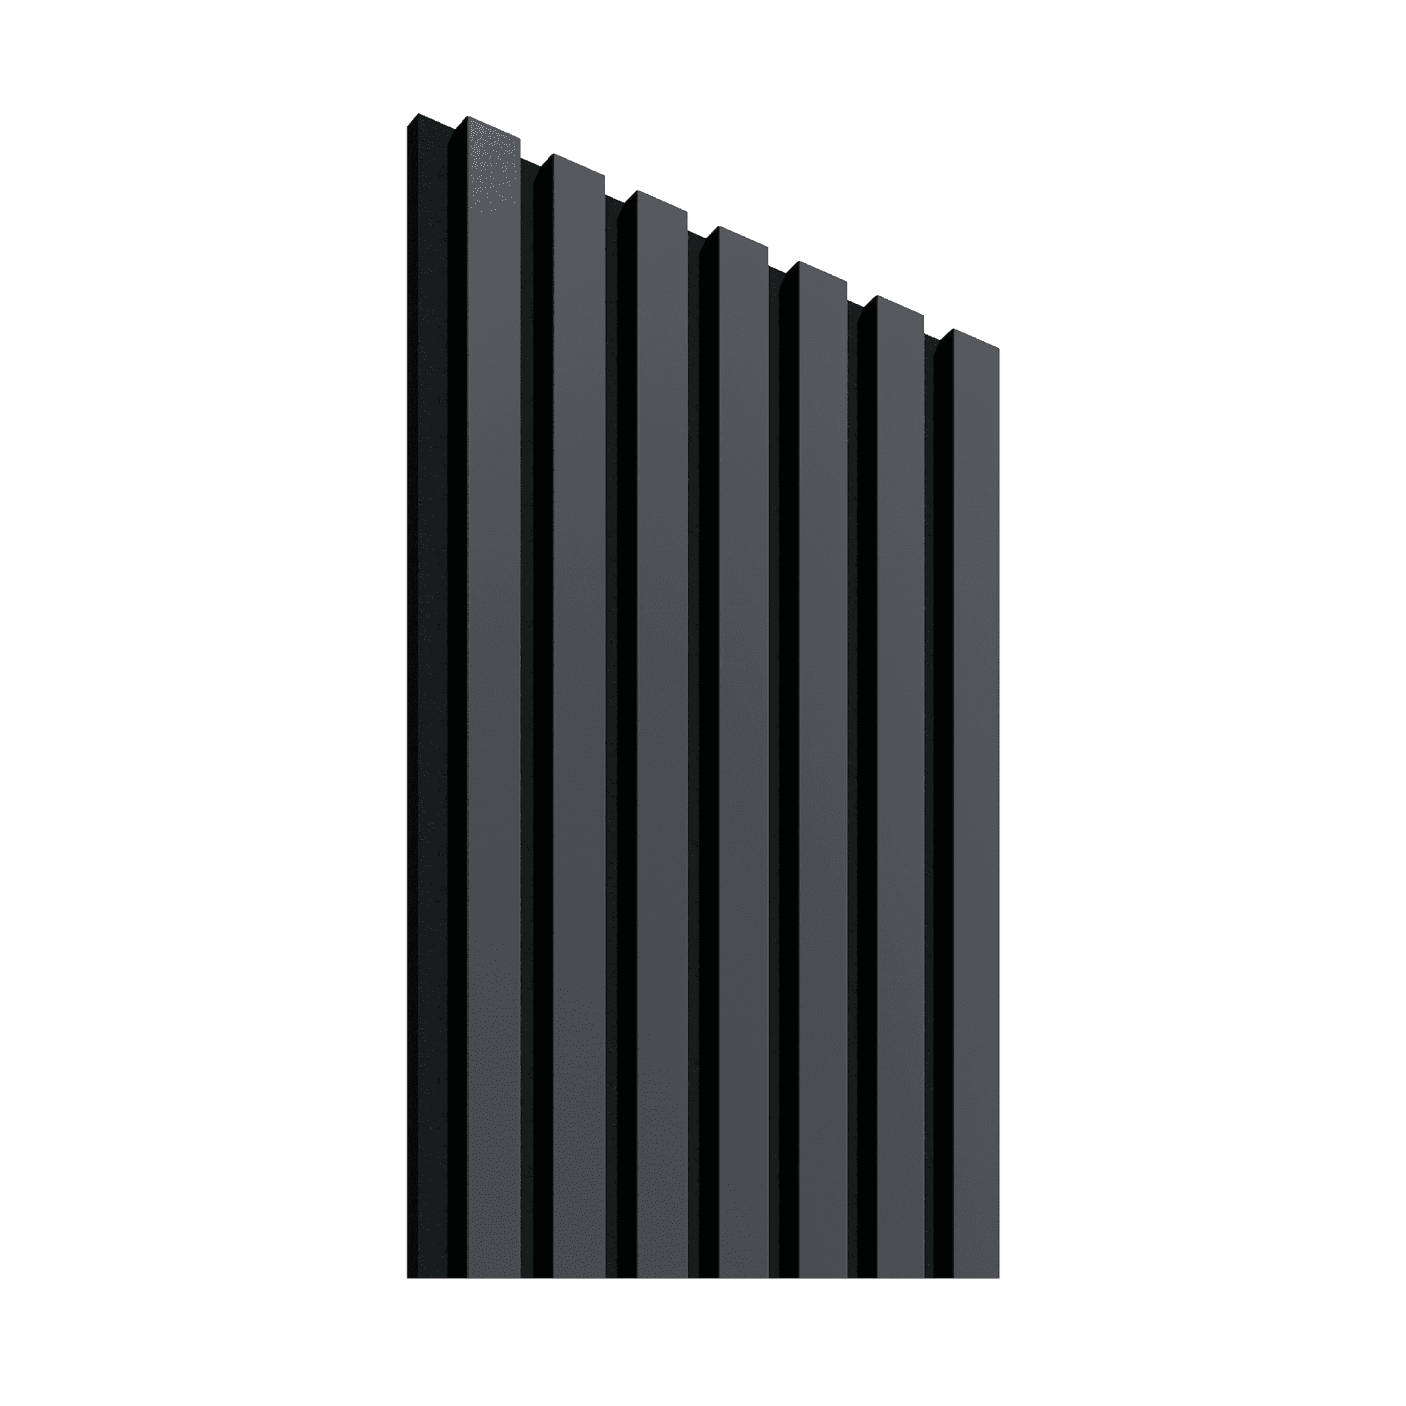 Akustinė lamelių sienelė, 265 x 30 cm, juodos spalvos